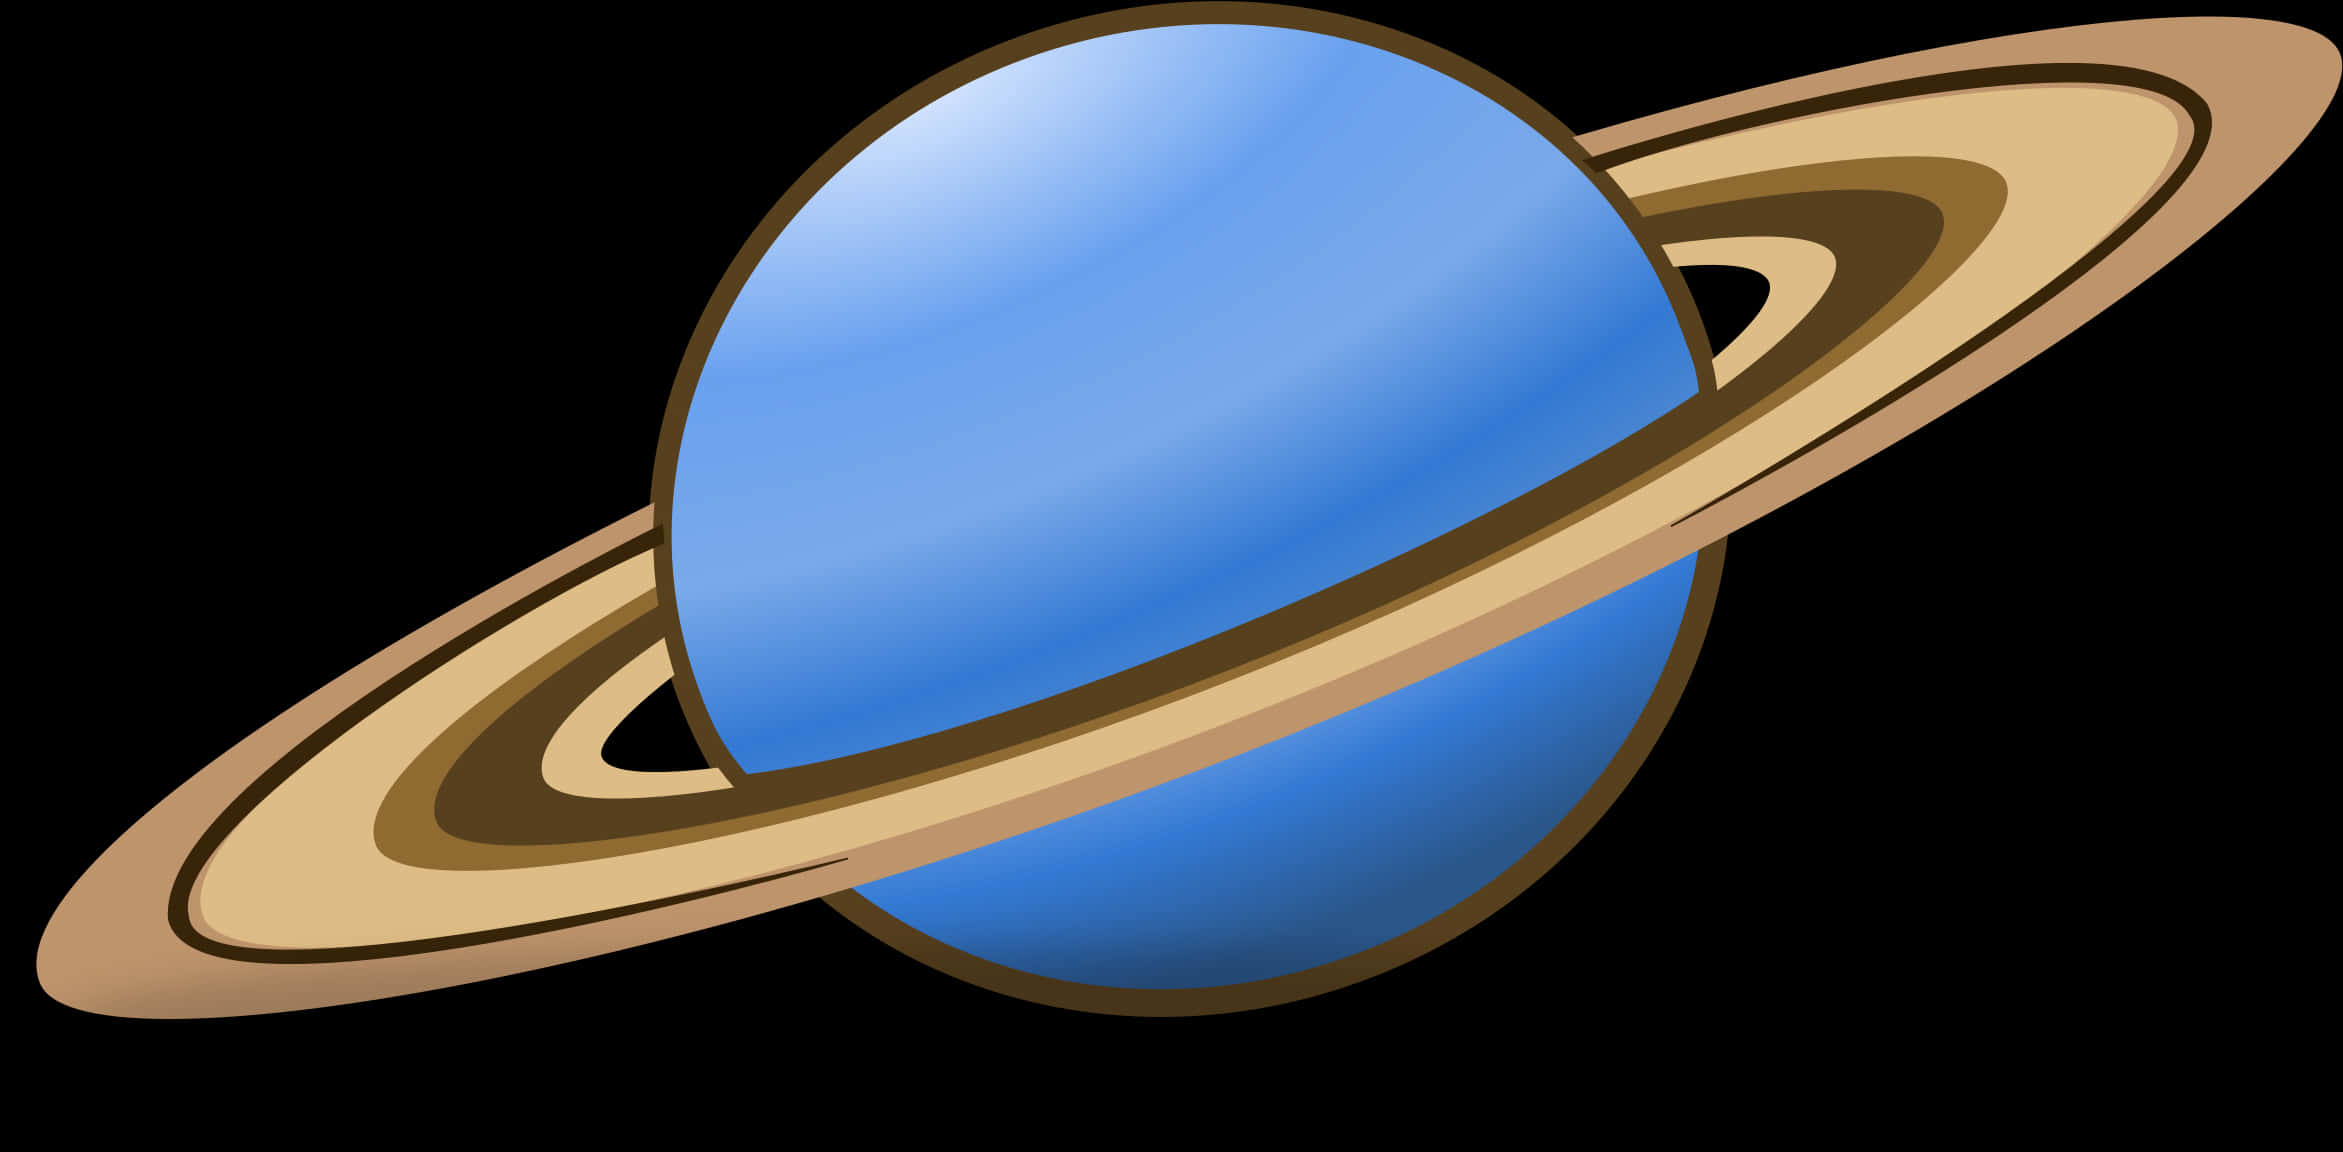 Saturn Planet Illustration PNG image